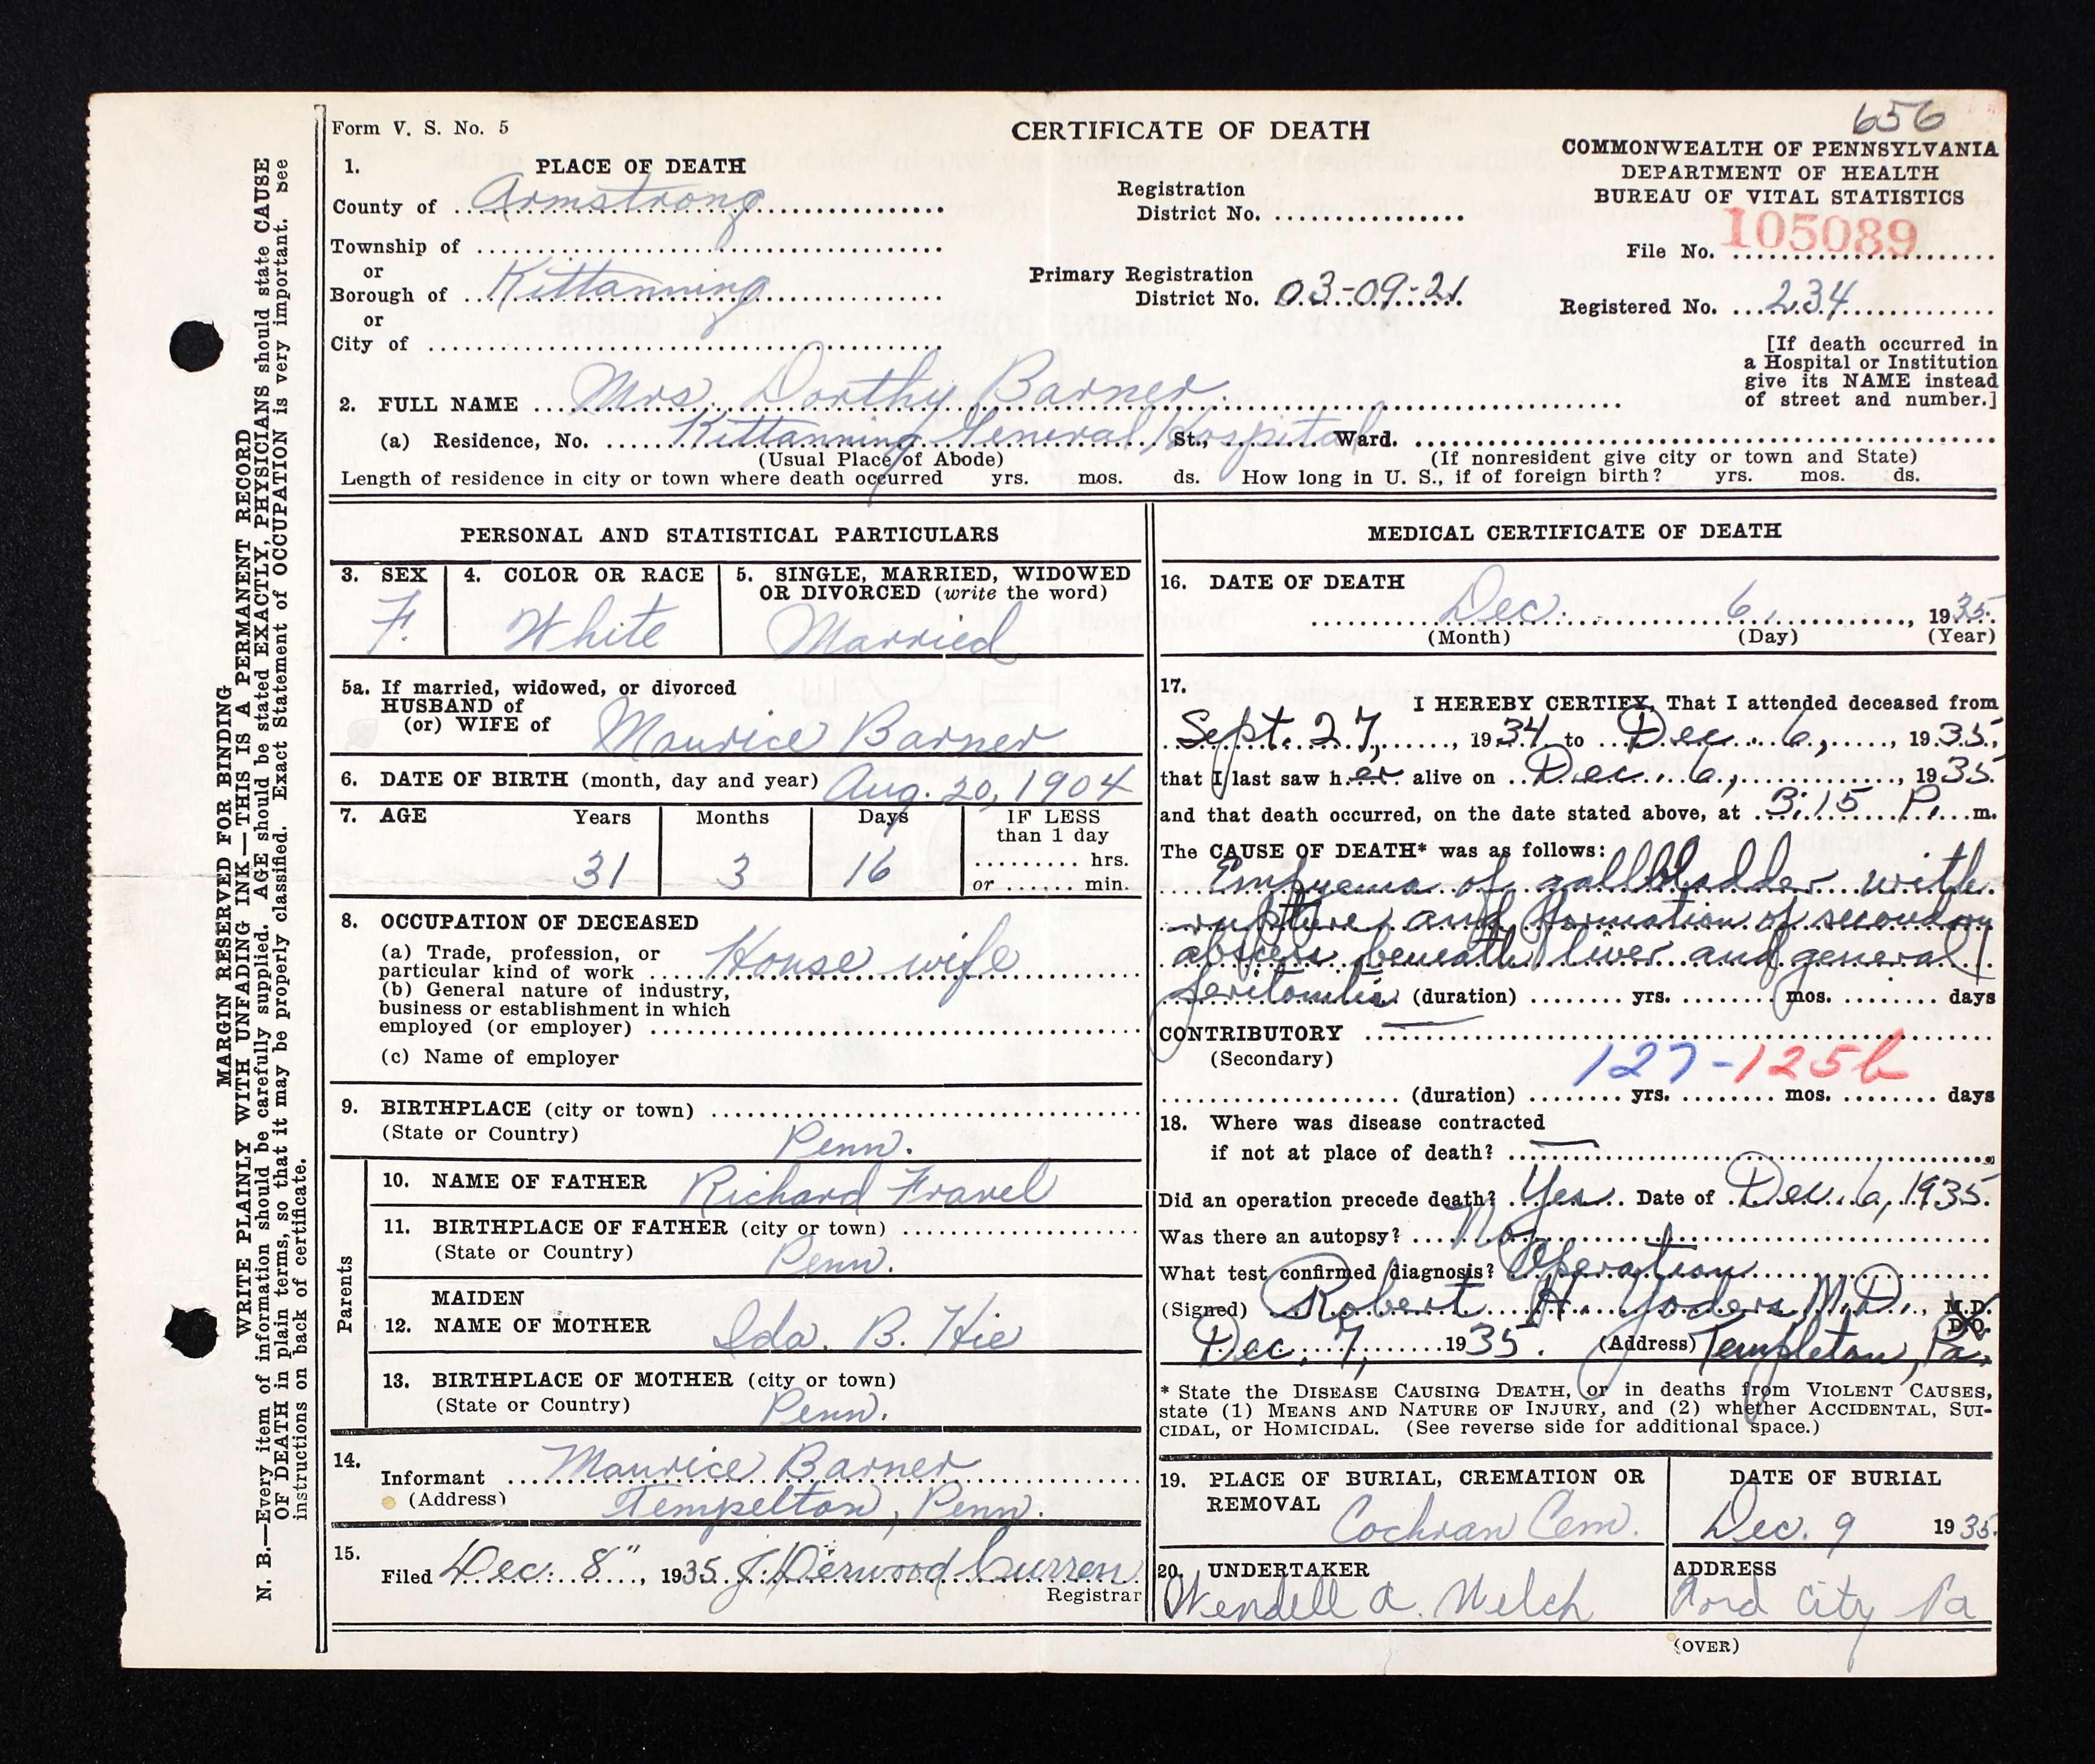 Dorothy Fravel Barner - Death Certificate